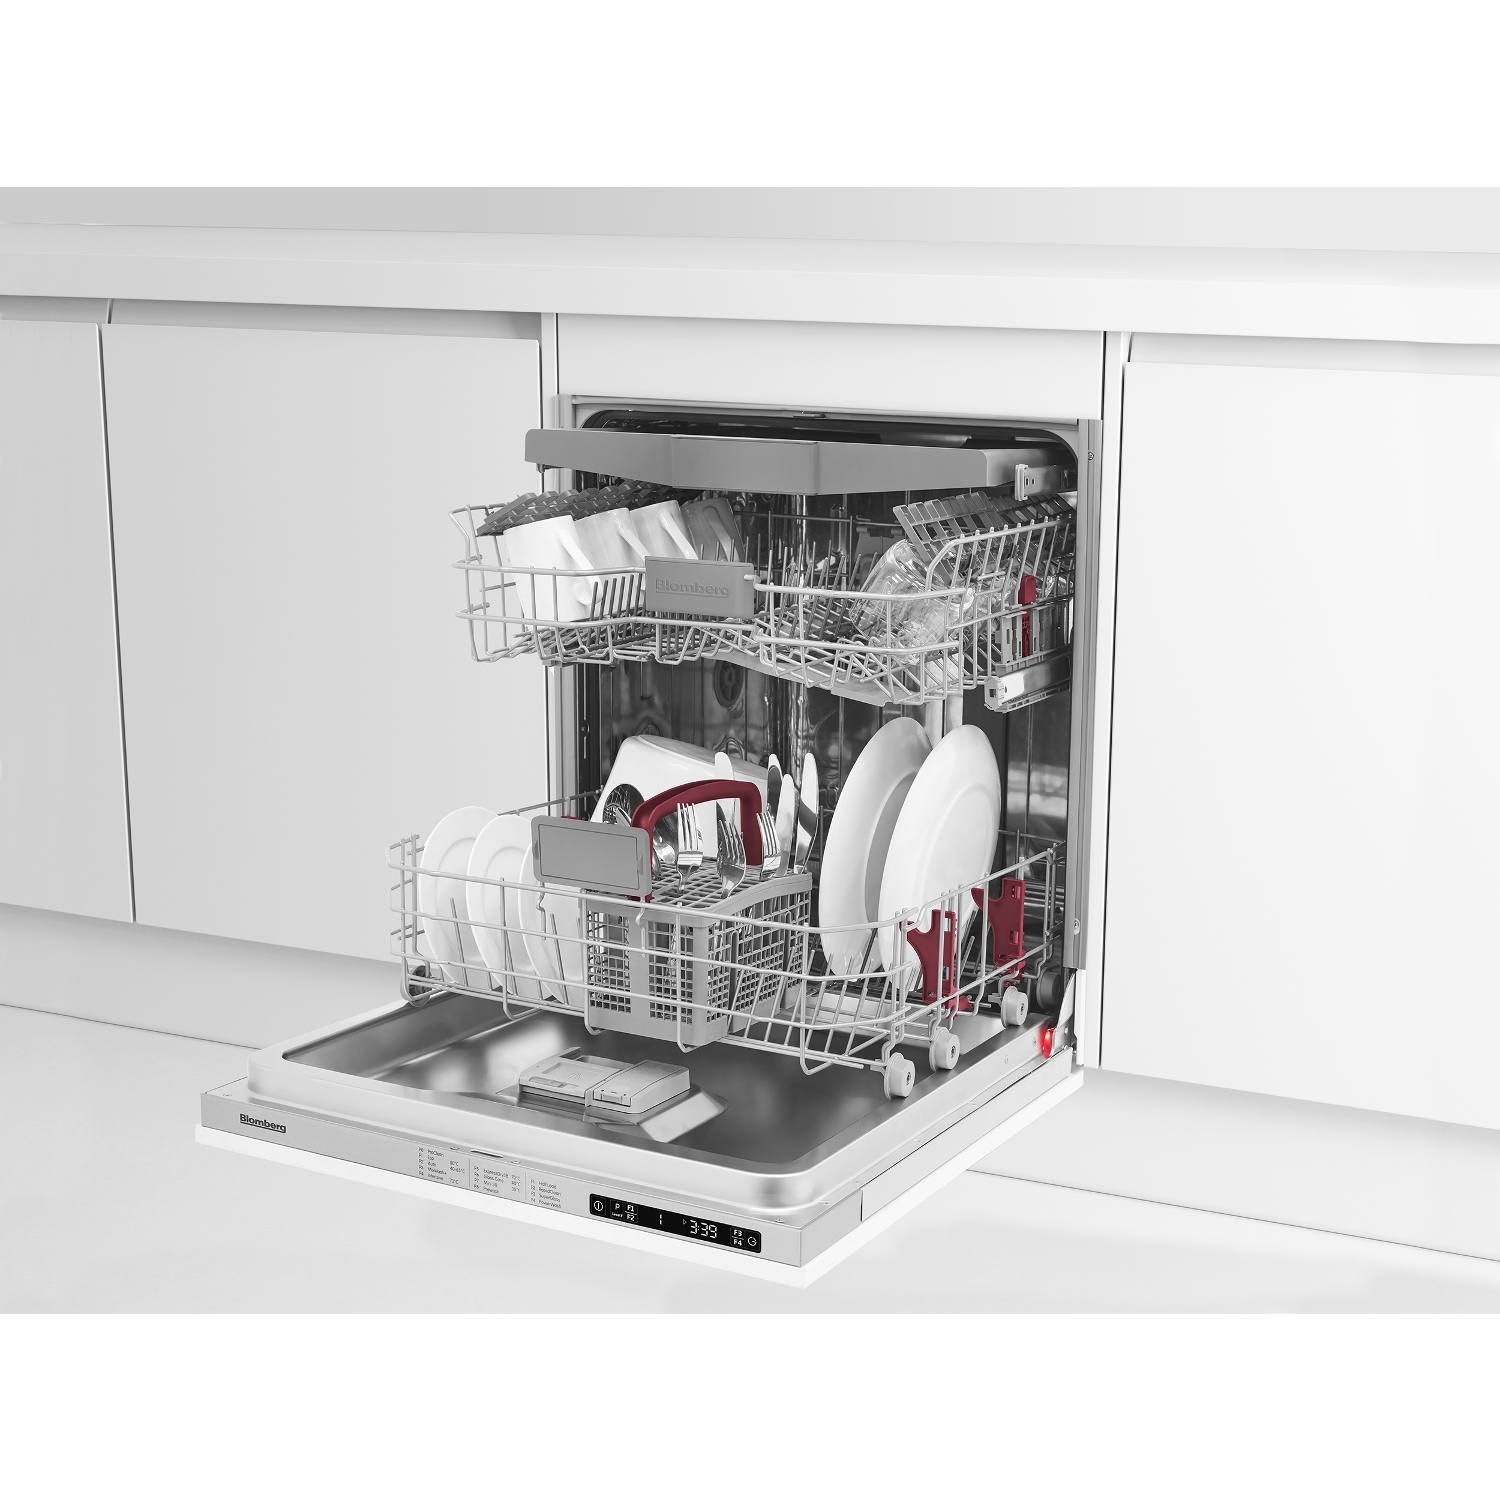 Blomberg LDV42244 Integrated Full Size Dishwasher - 14 Place Settings - 0